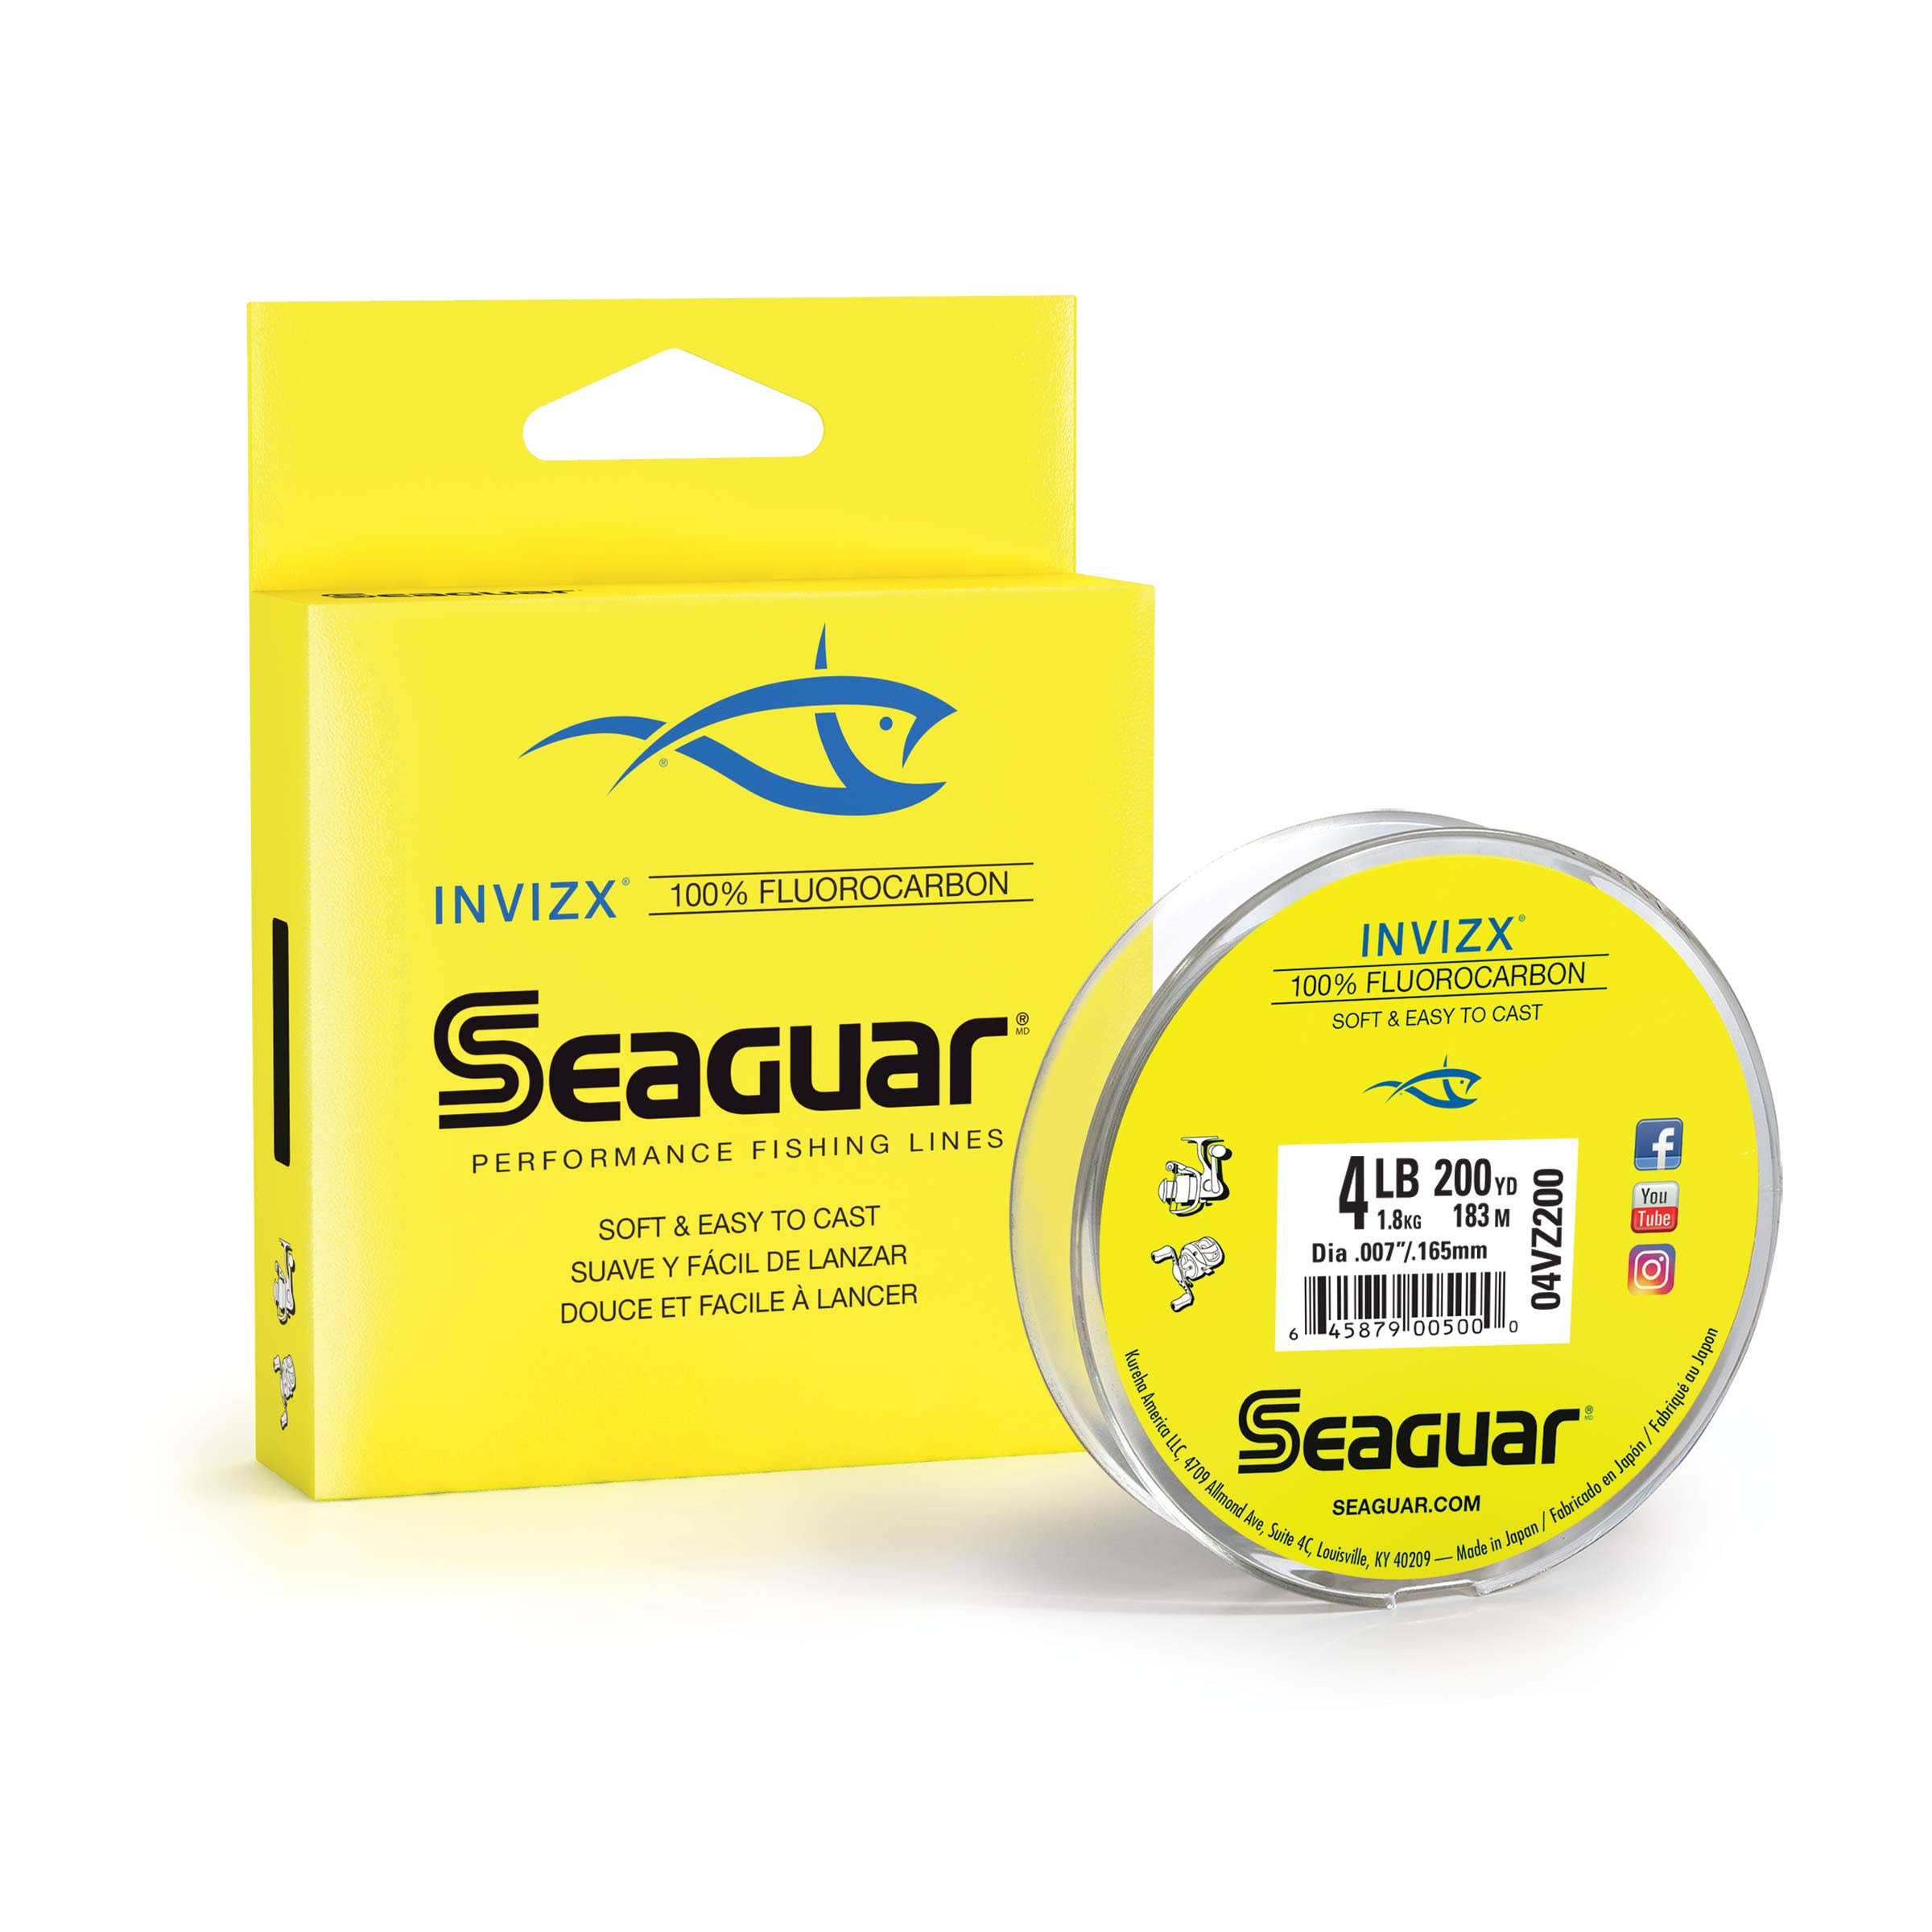 Seaguar Invizx 100% Fluorocarbon Fishing Line - 6lb, 200yds